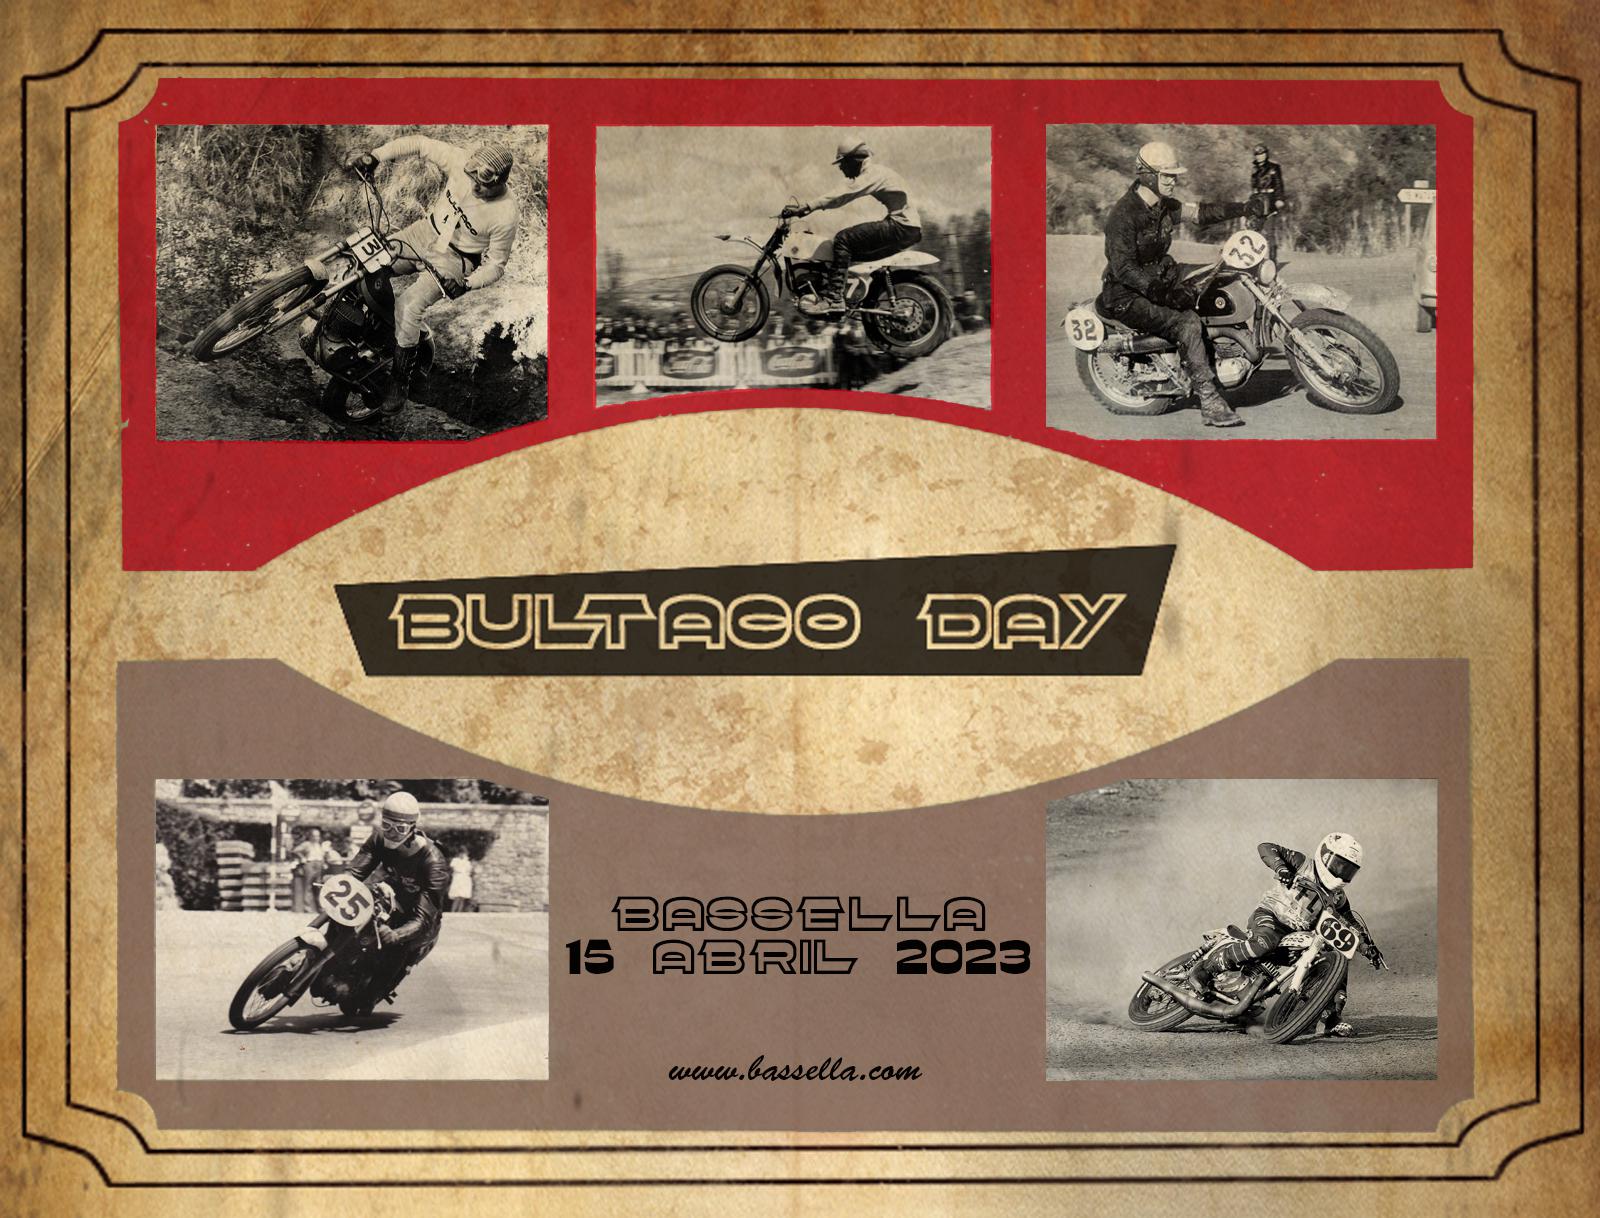 Bultaco Day 2023 -15 de abril en Bassella